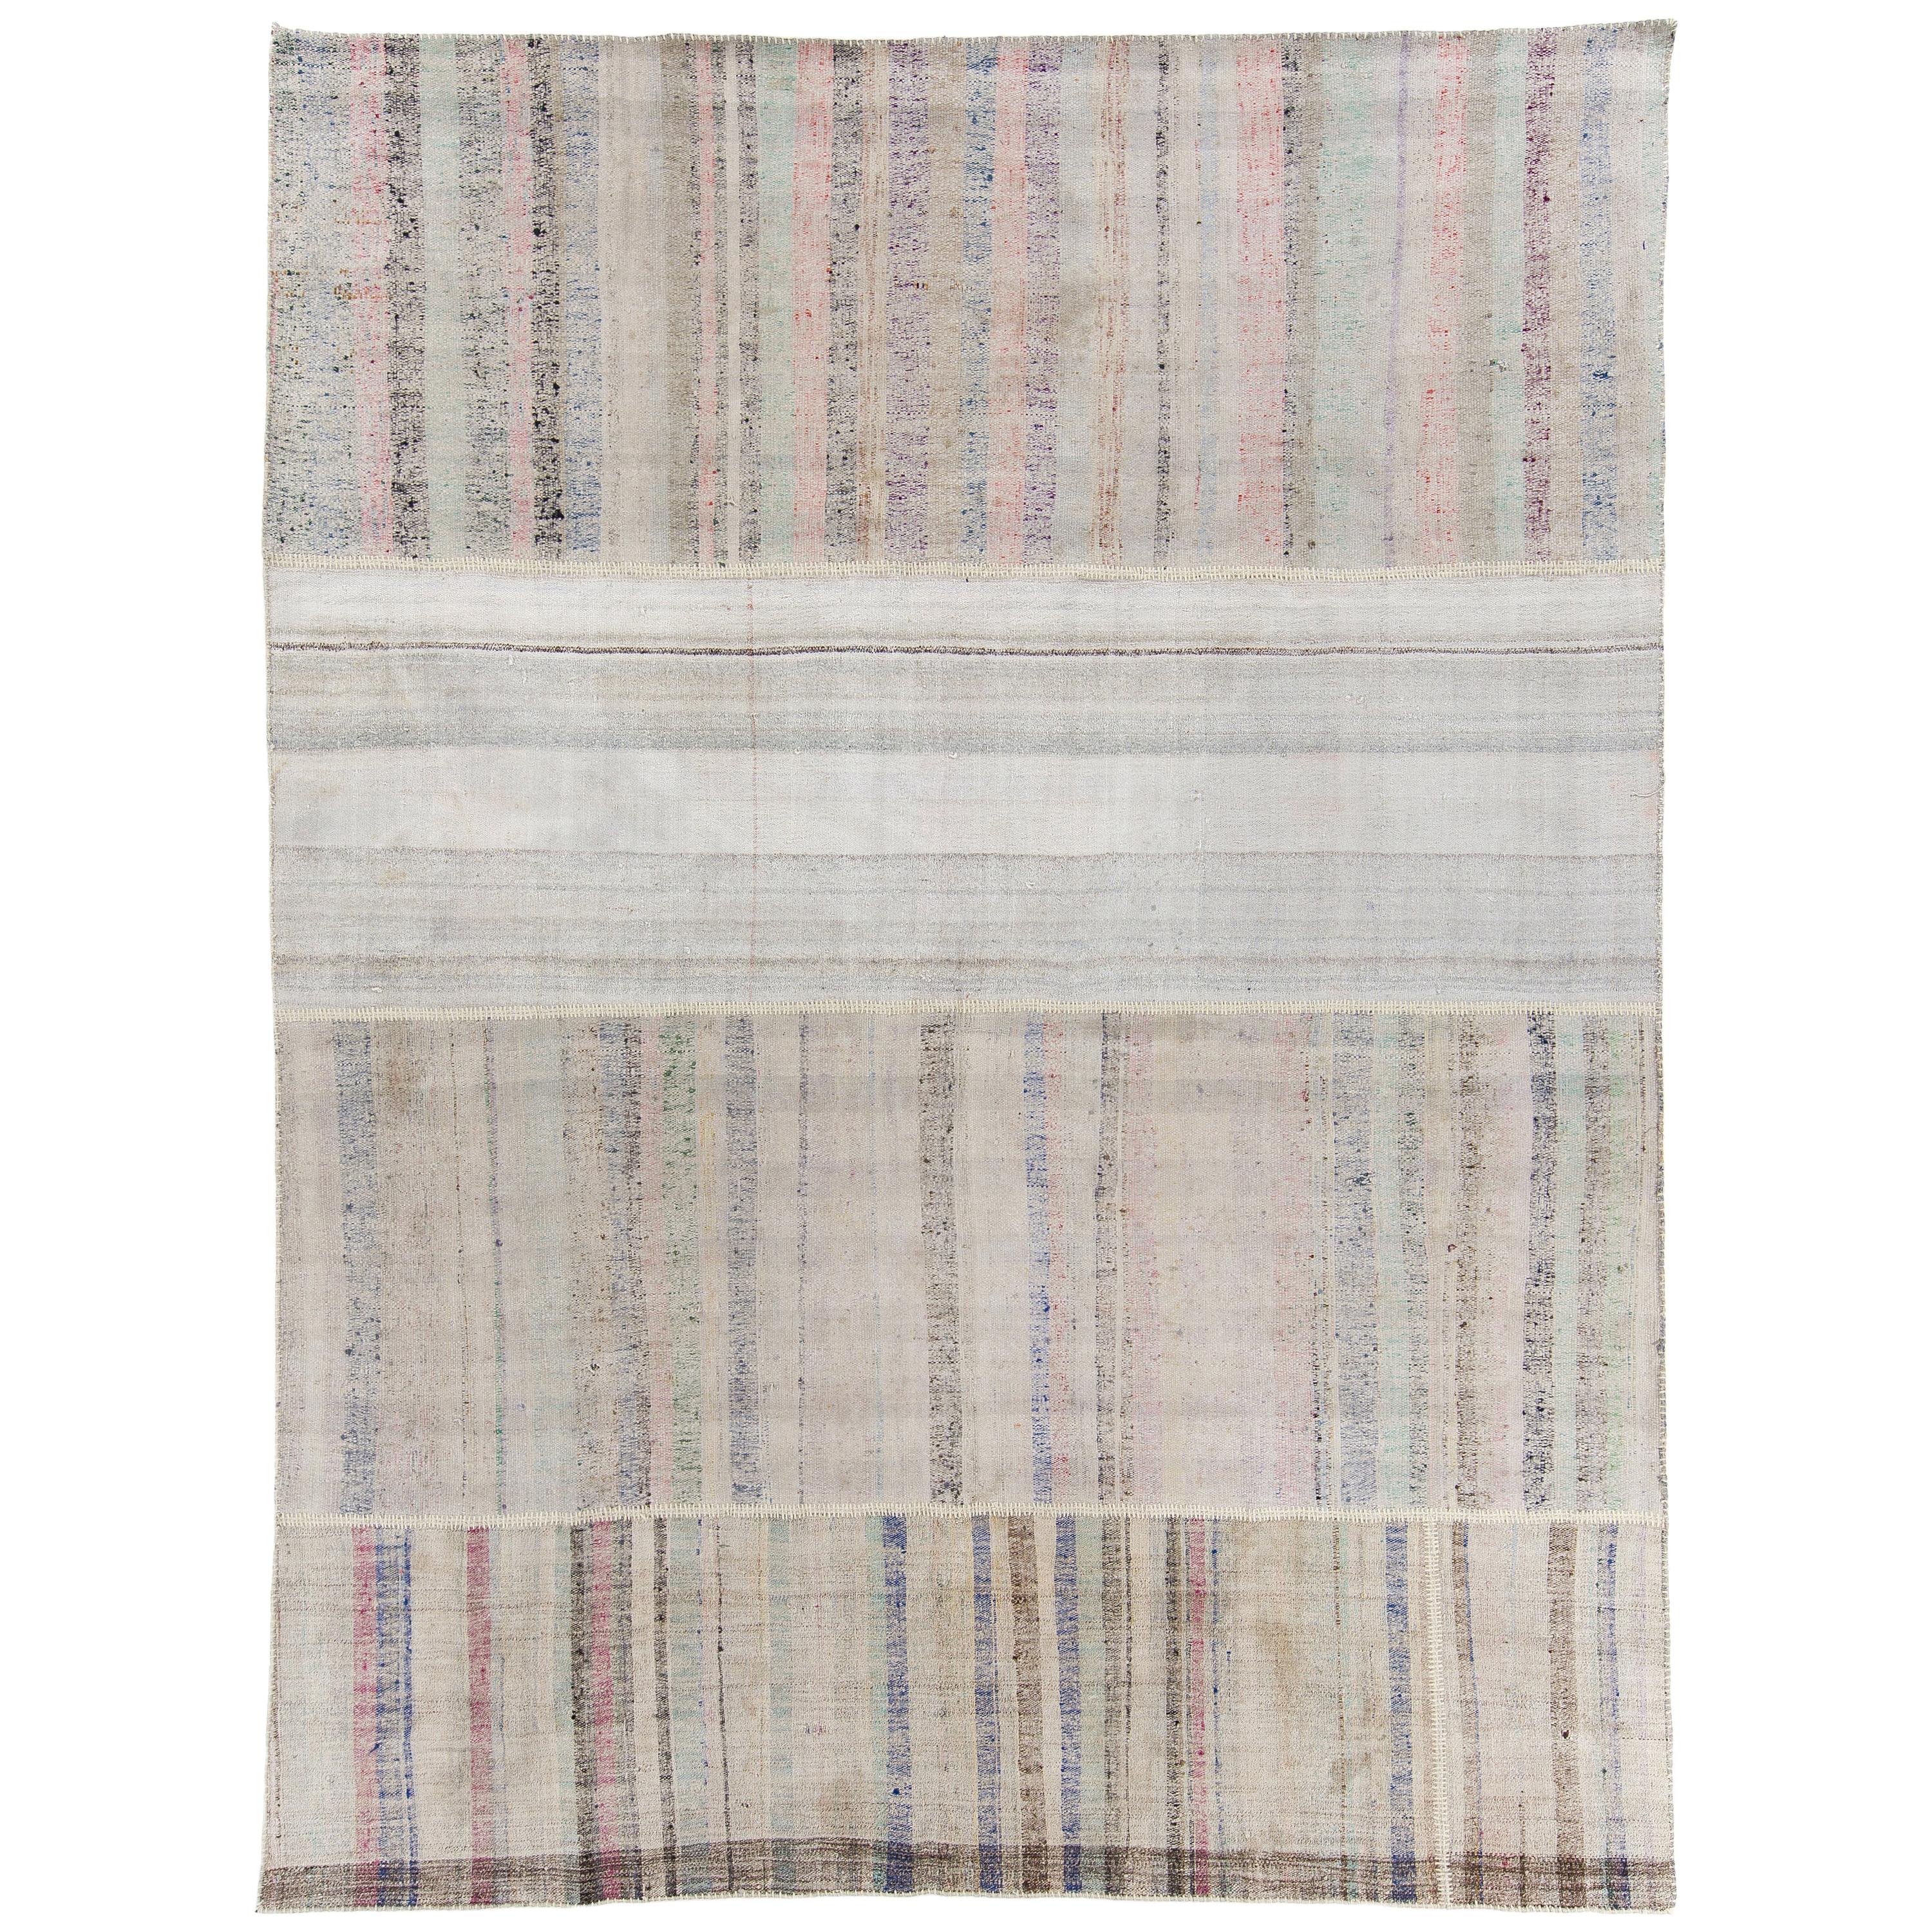 9.2x12.2 Ft Vintage Rag-Teppich aus Baumwolle mit bunten Streifen, Flachgewebe-Kelim